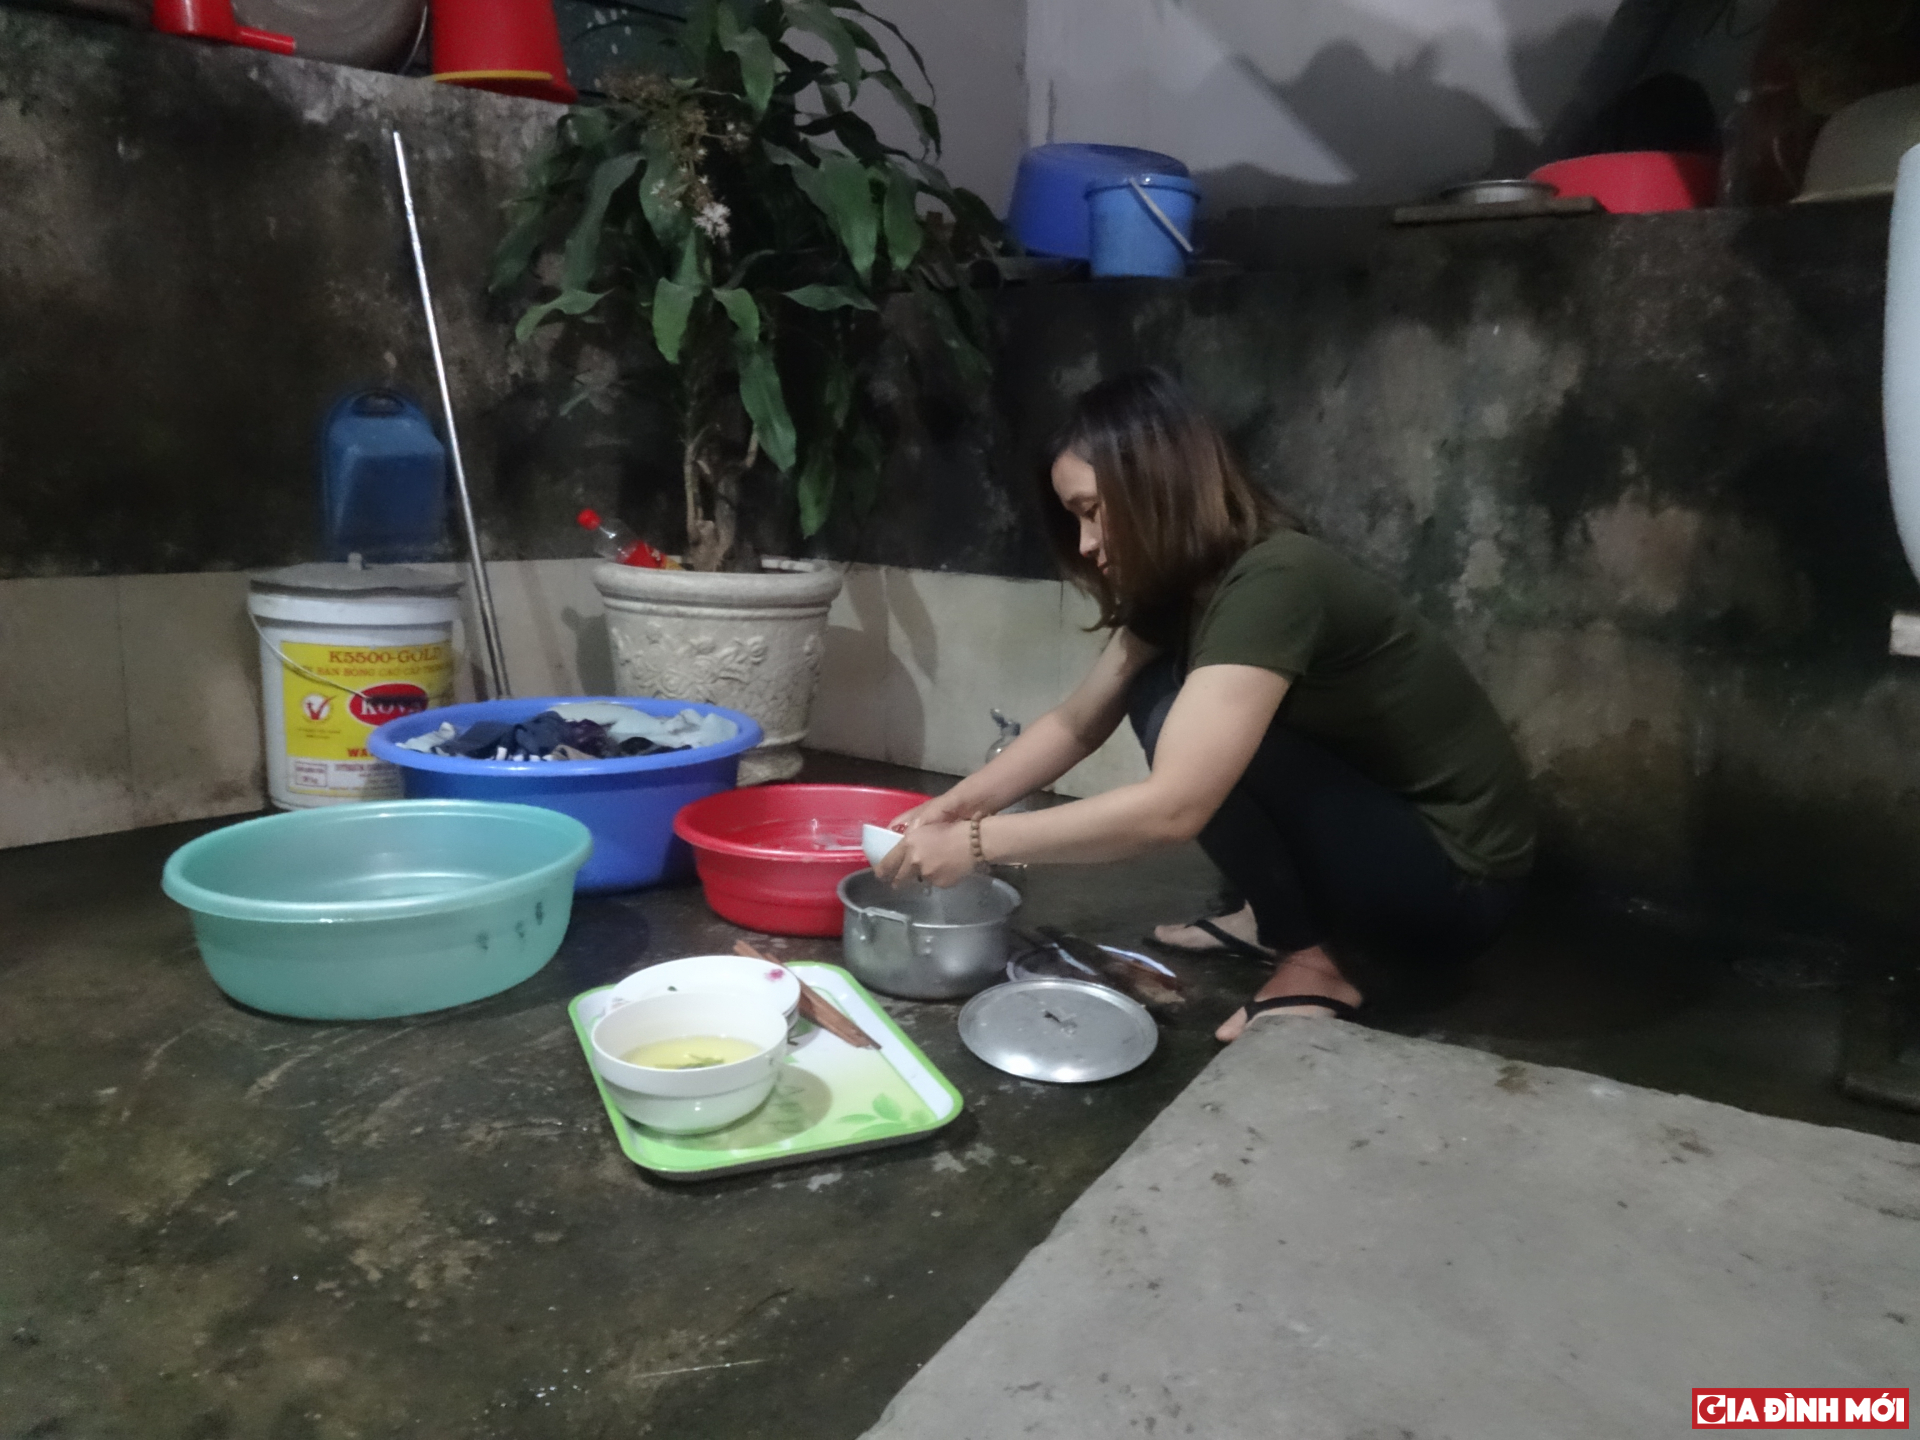 Sau bữa cơm tối, cô giáo trẻ vội vàng rửa dọn bát đũa để bắt tay vào công việc làm thêm của mình.